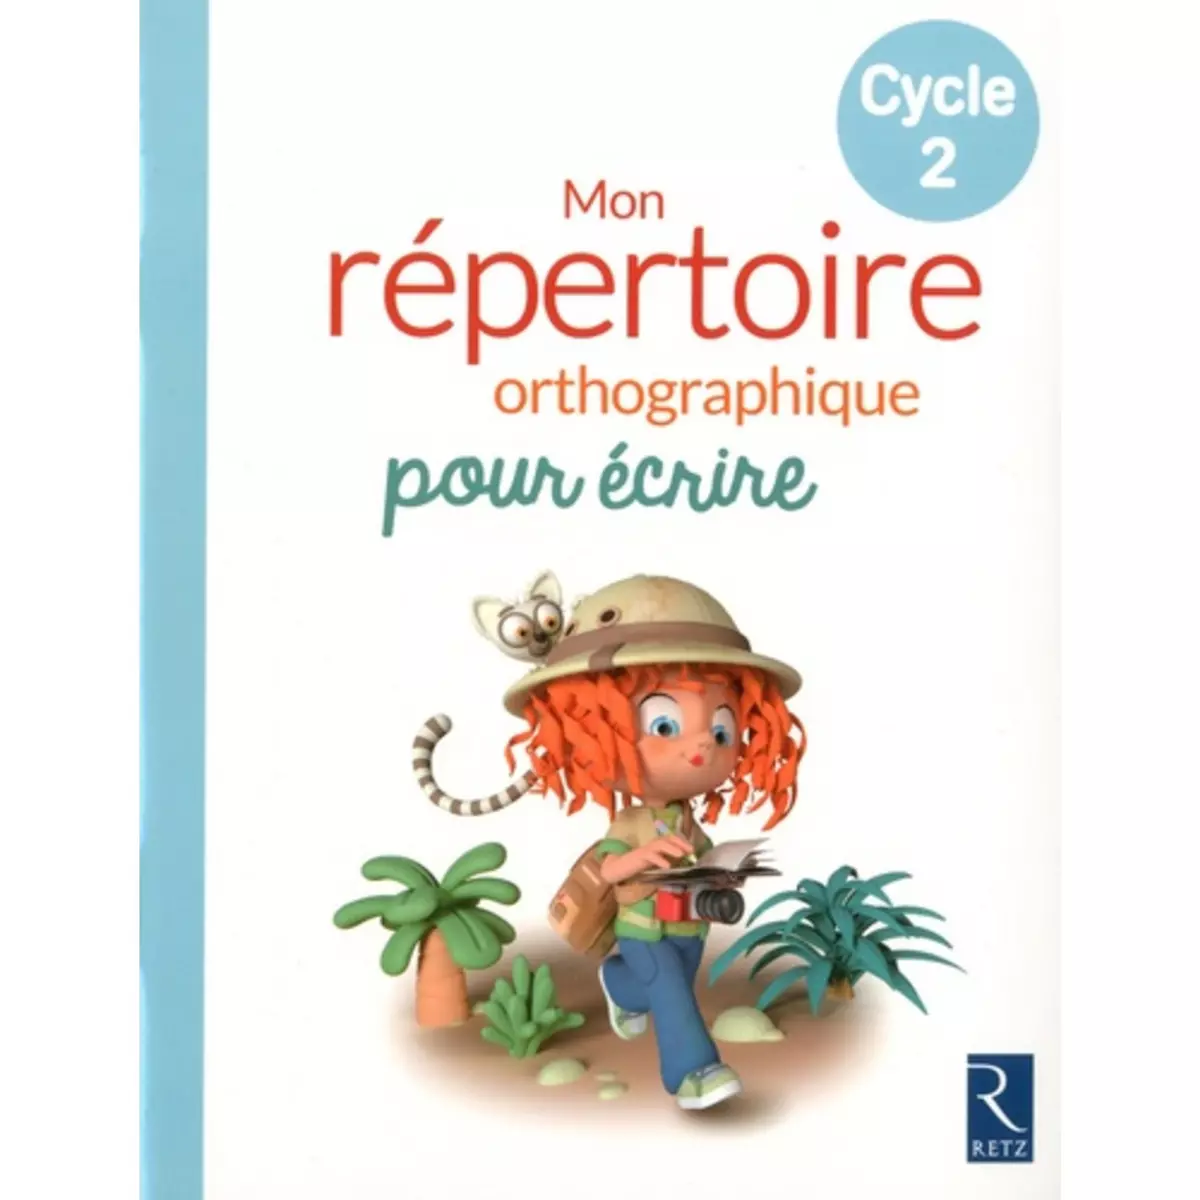  MON REPERTOIRE ORTHOGRAPHIQUE POUR ECRIRE CYCLE 2. EDITION 2018, Fetet Antoine